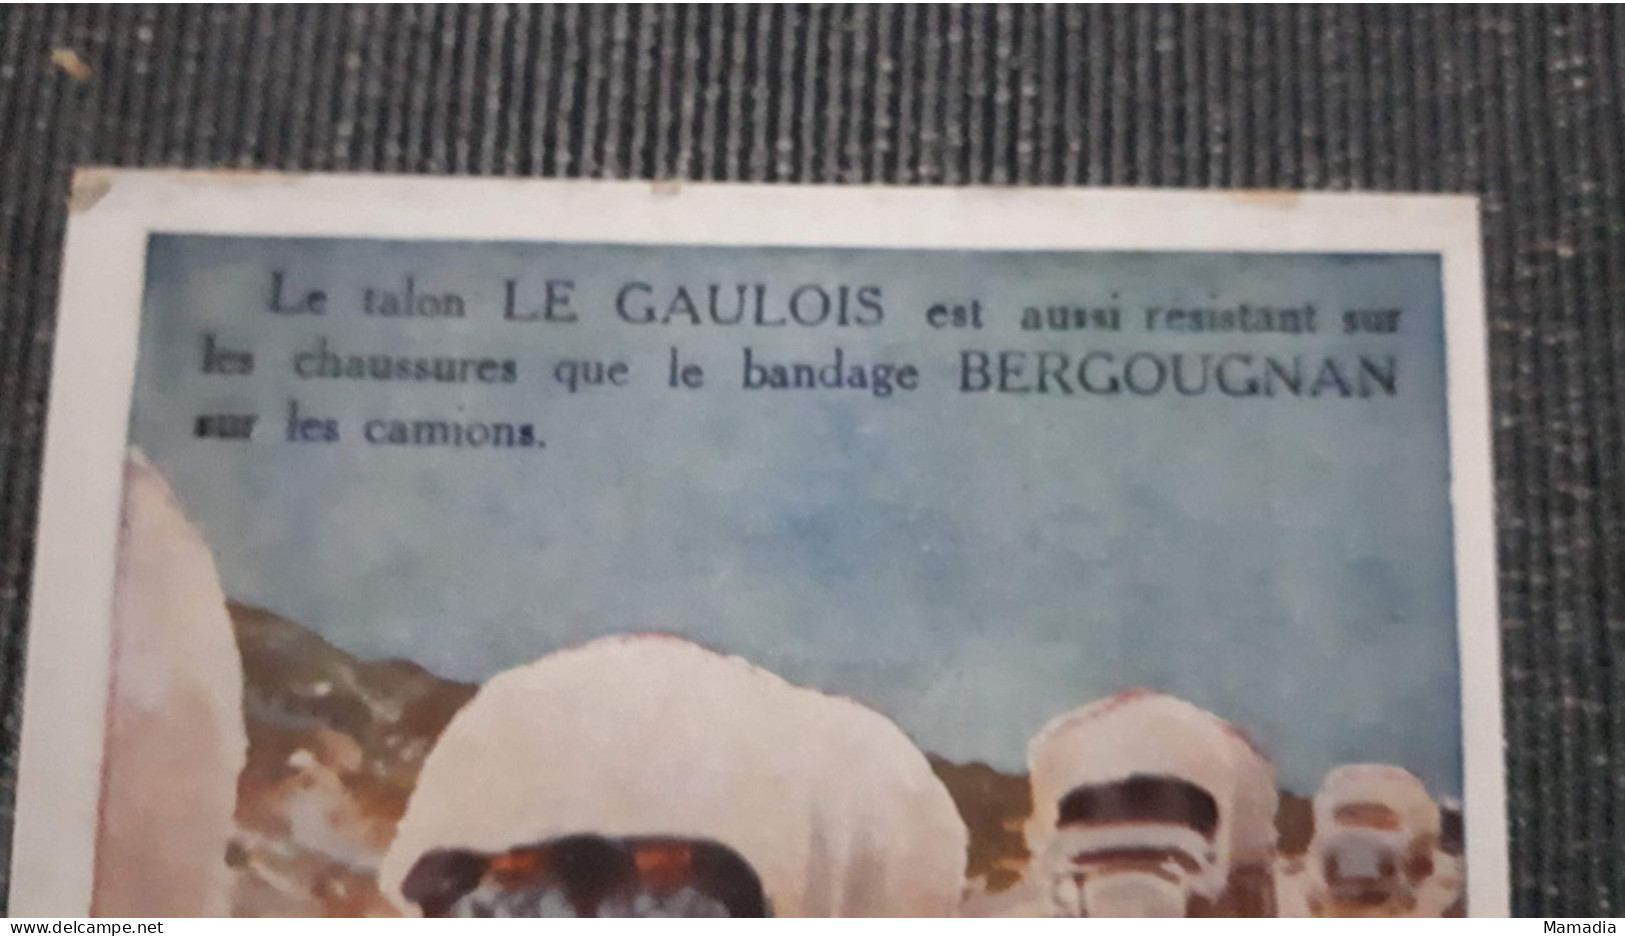 CARTE PUBLICITAIRE CAOUTCHOUC BANDAGES ETS BERGOUGNAN TALON LE GAULOIS  T. SALA - Publicidad